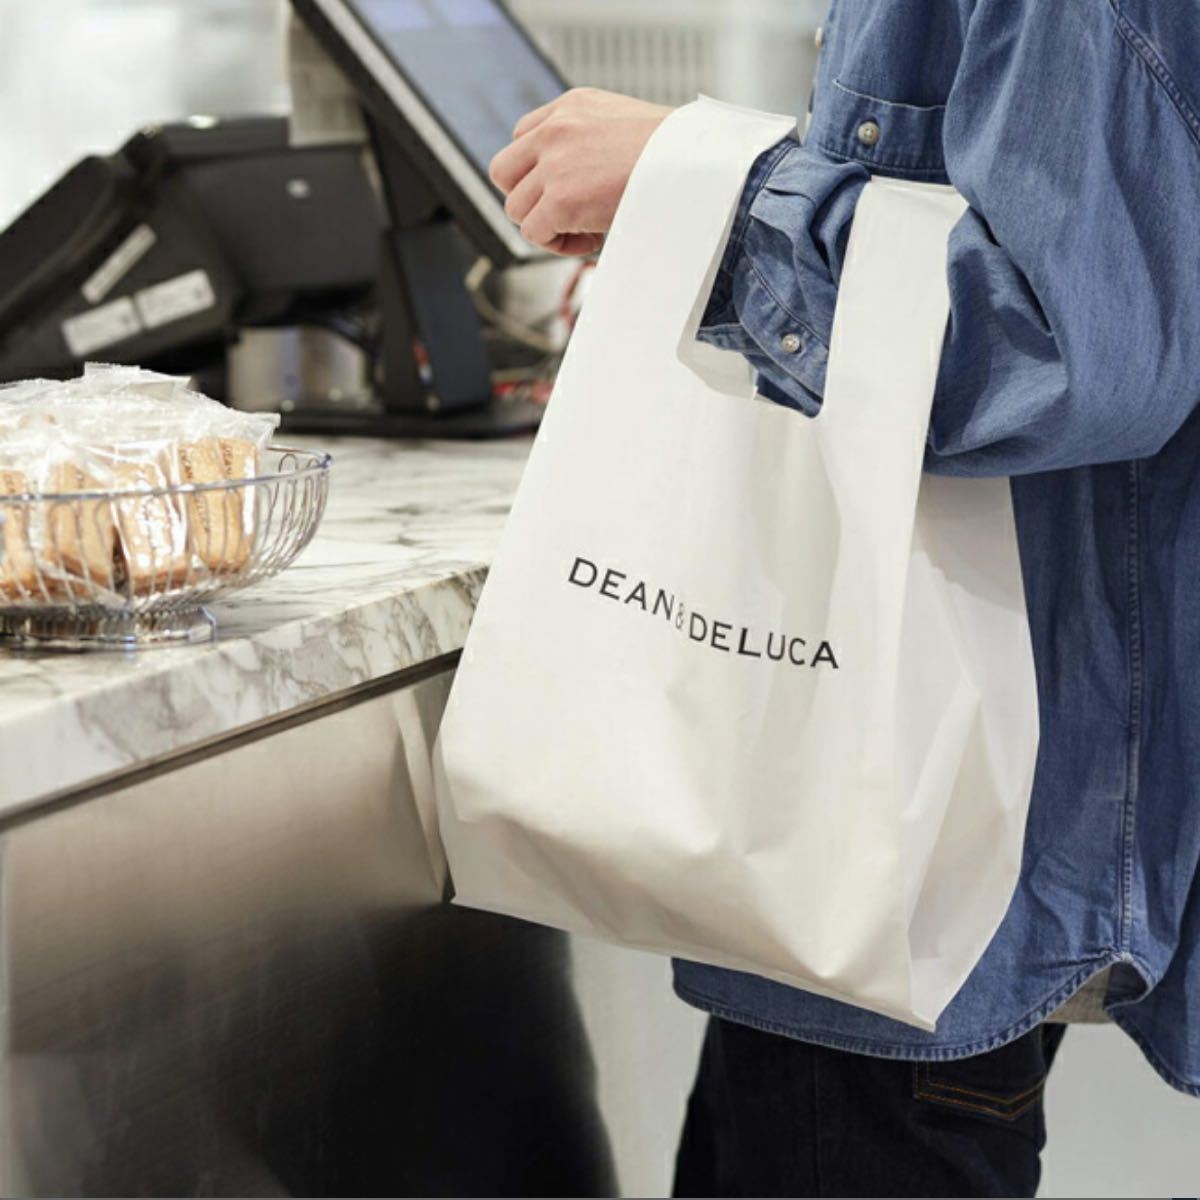 DEAN&DELUCA ディーンアンドデルーカ 新品未使用 ディーン&デルーカ エコバッグ コンパクト ミニマムエコバッグホワイト